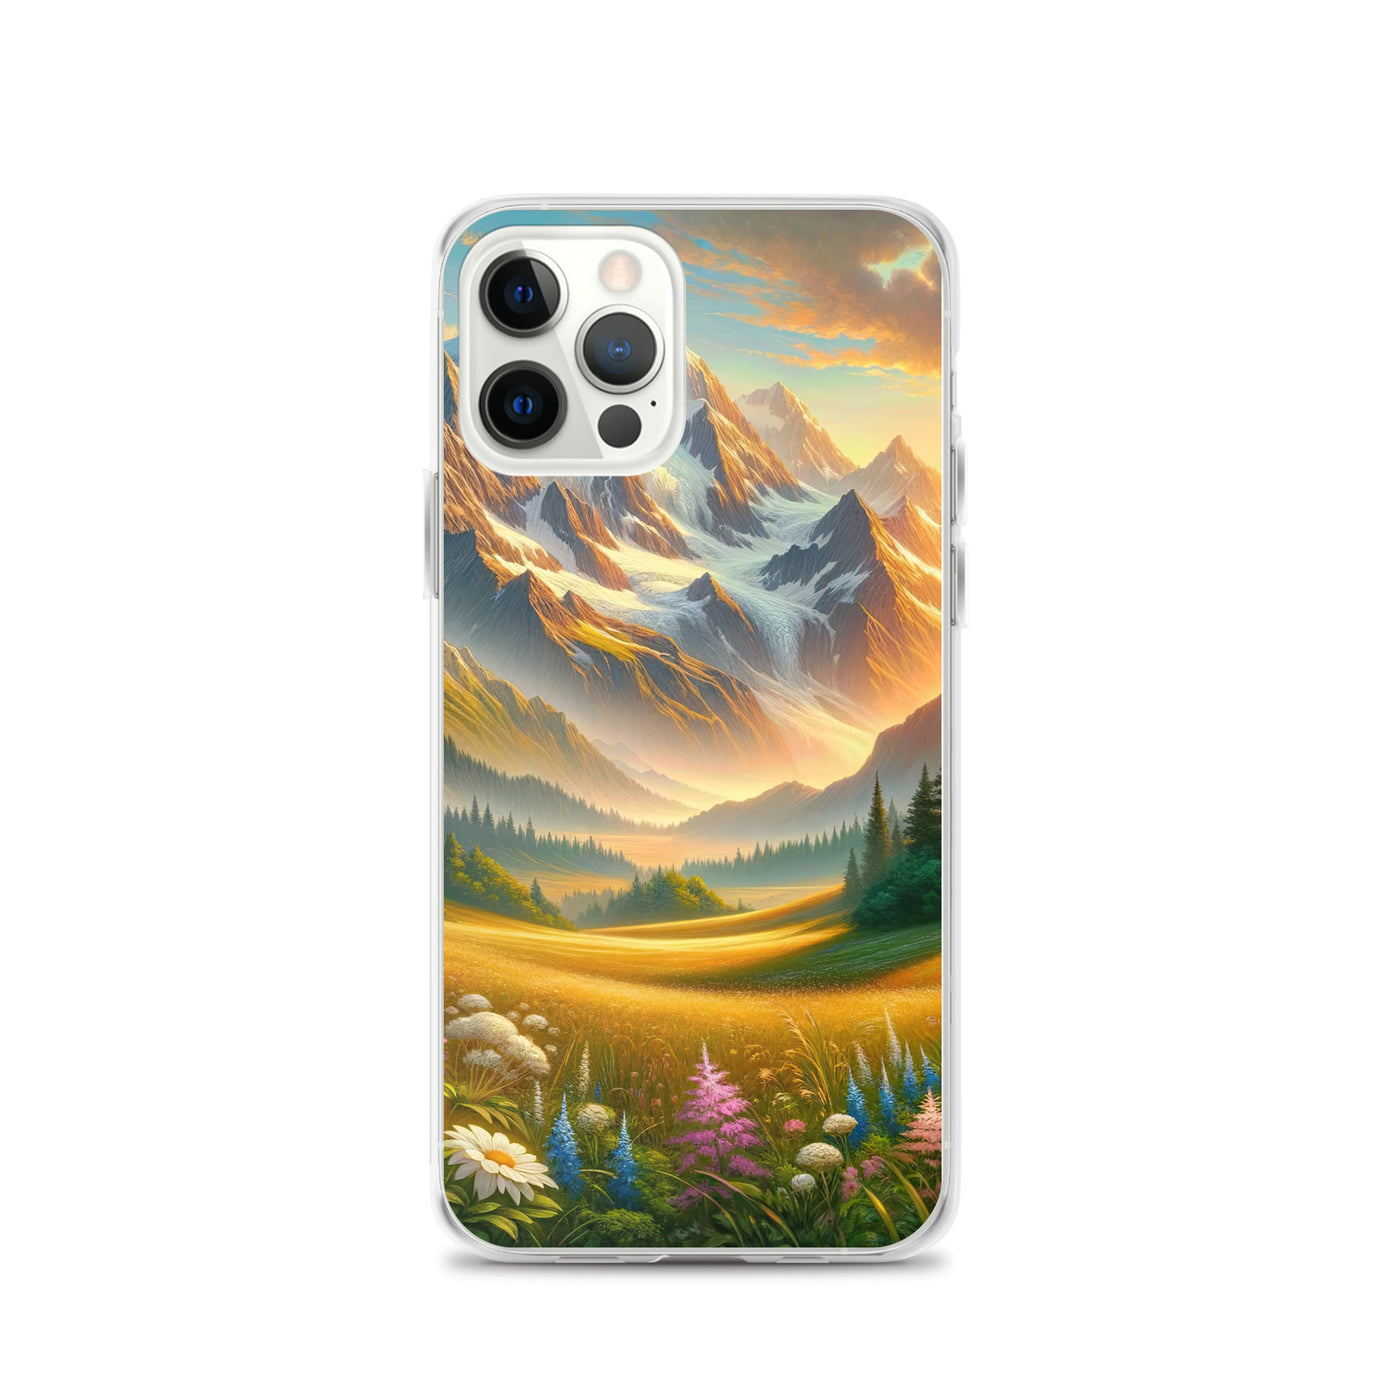 Heitere Alpenschönheit: Schneeberge und Wildblumenwiesen - iPhone Schutzhülle (durchsichtig) berge xxx yyy zzz iPhone 12 Pro